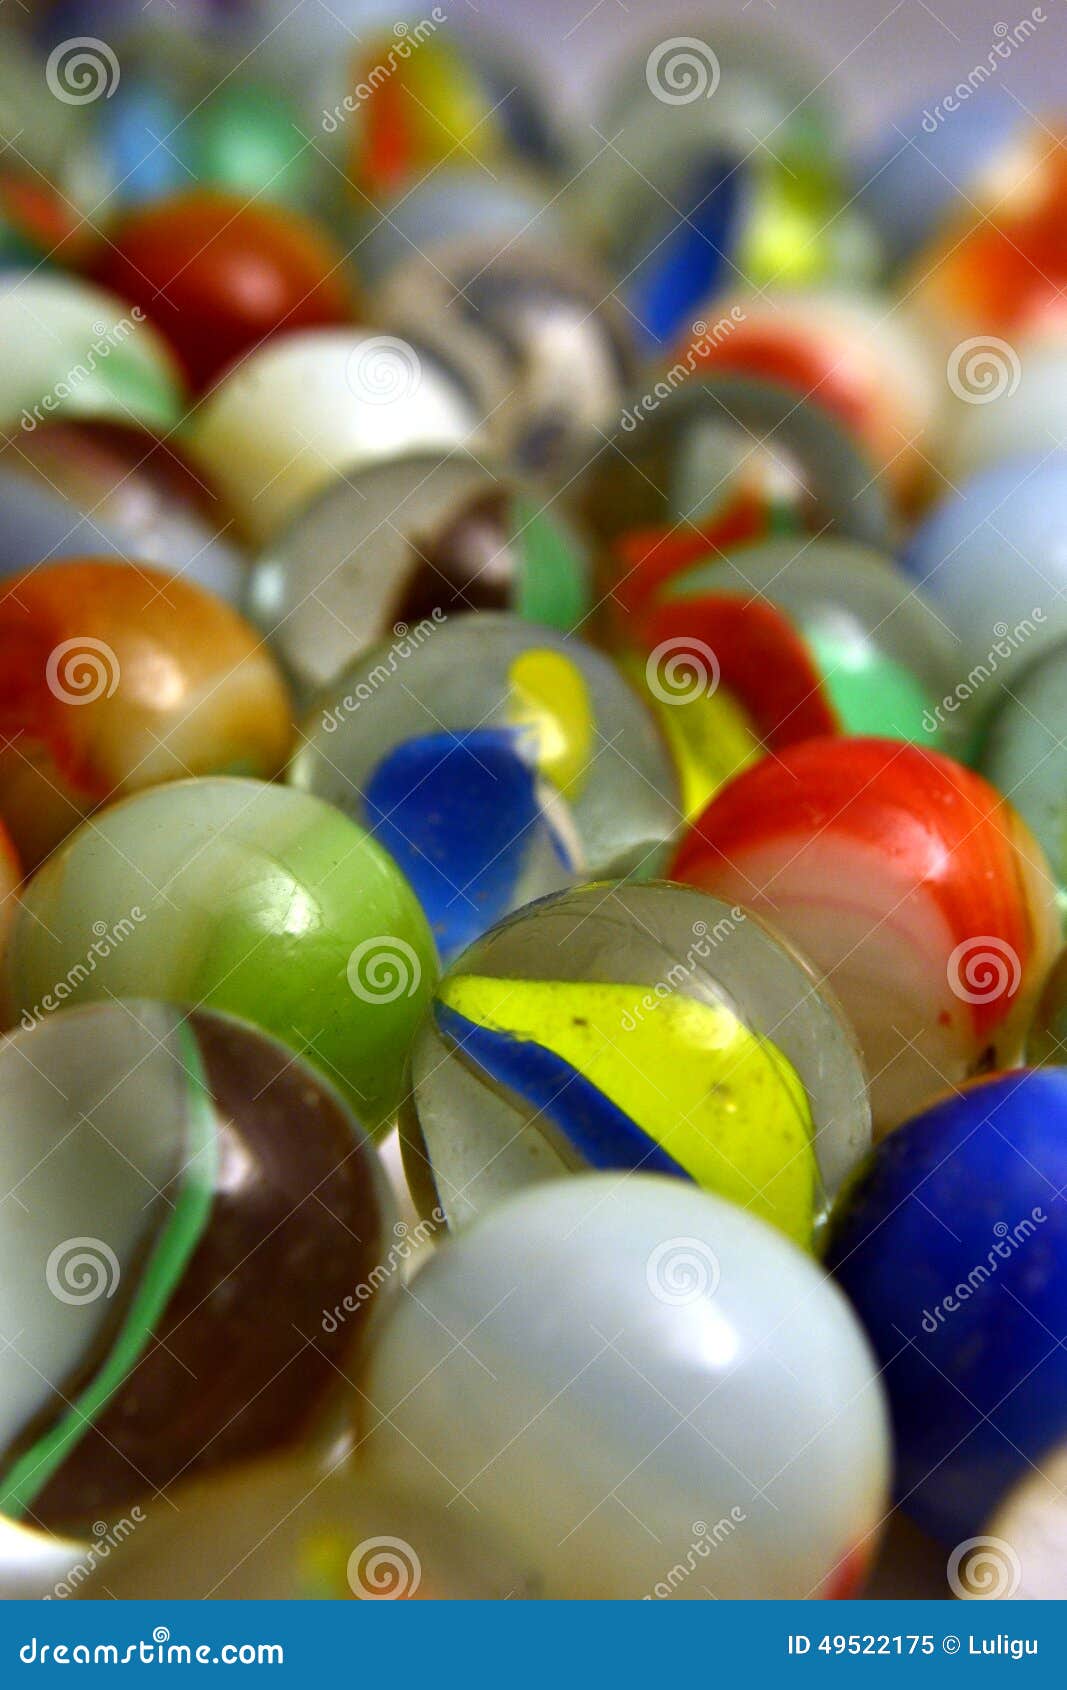 glass colored balls